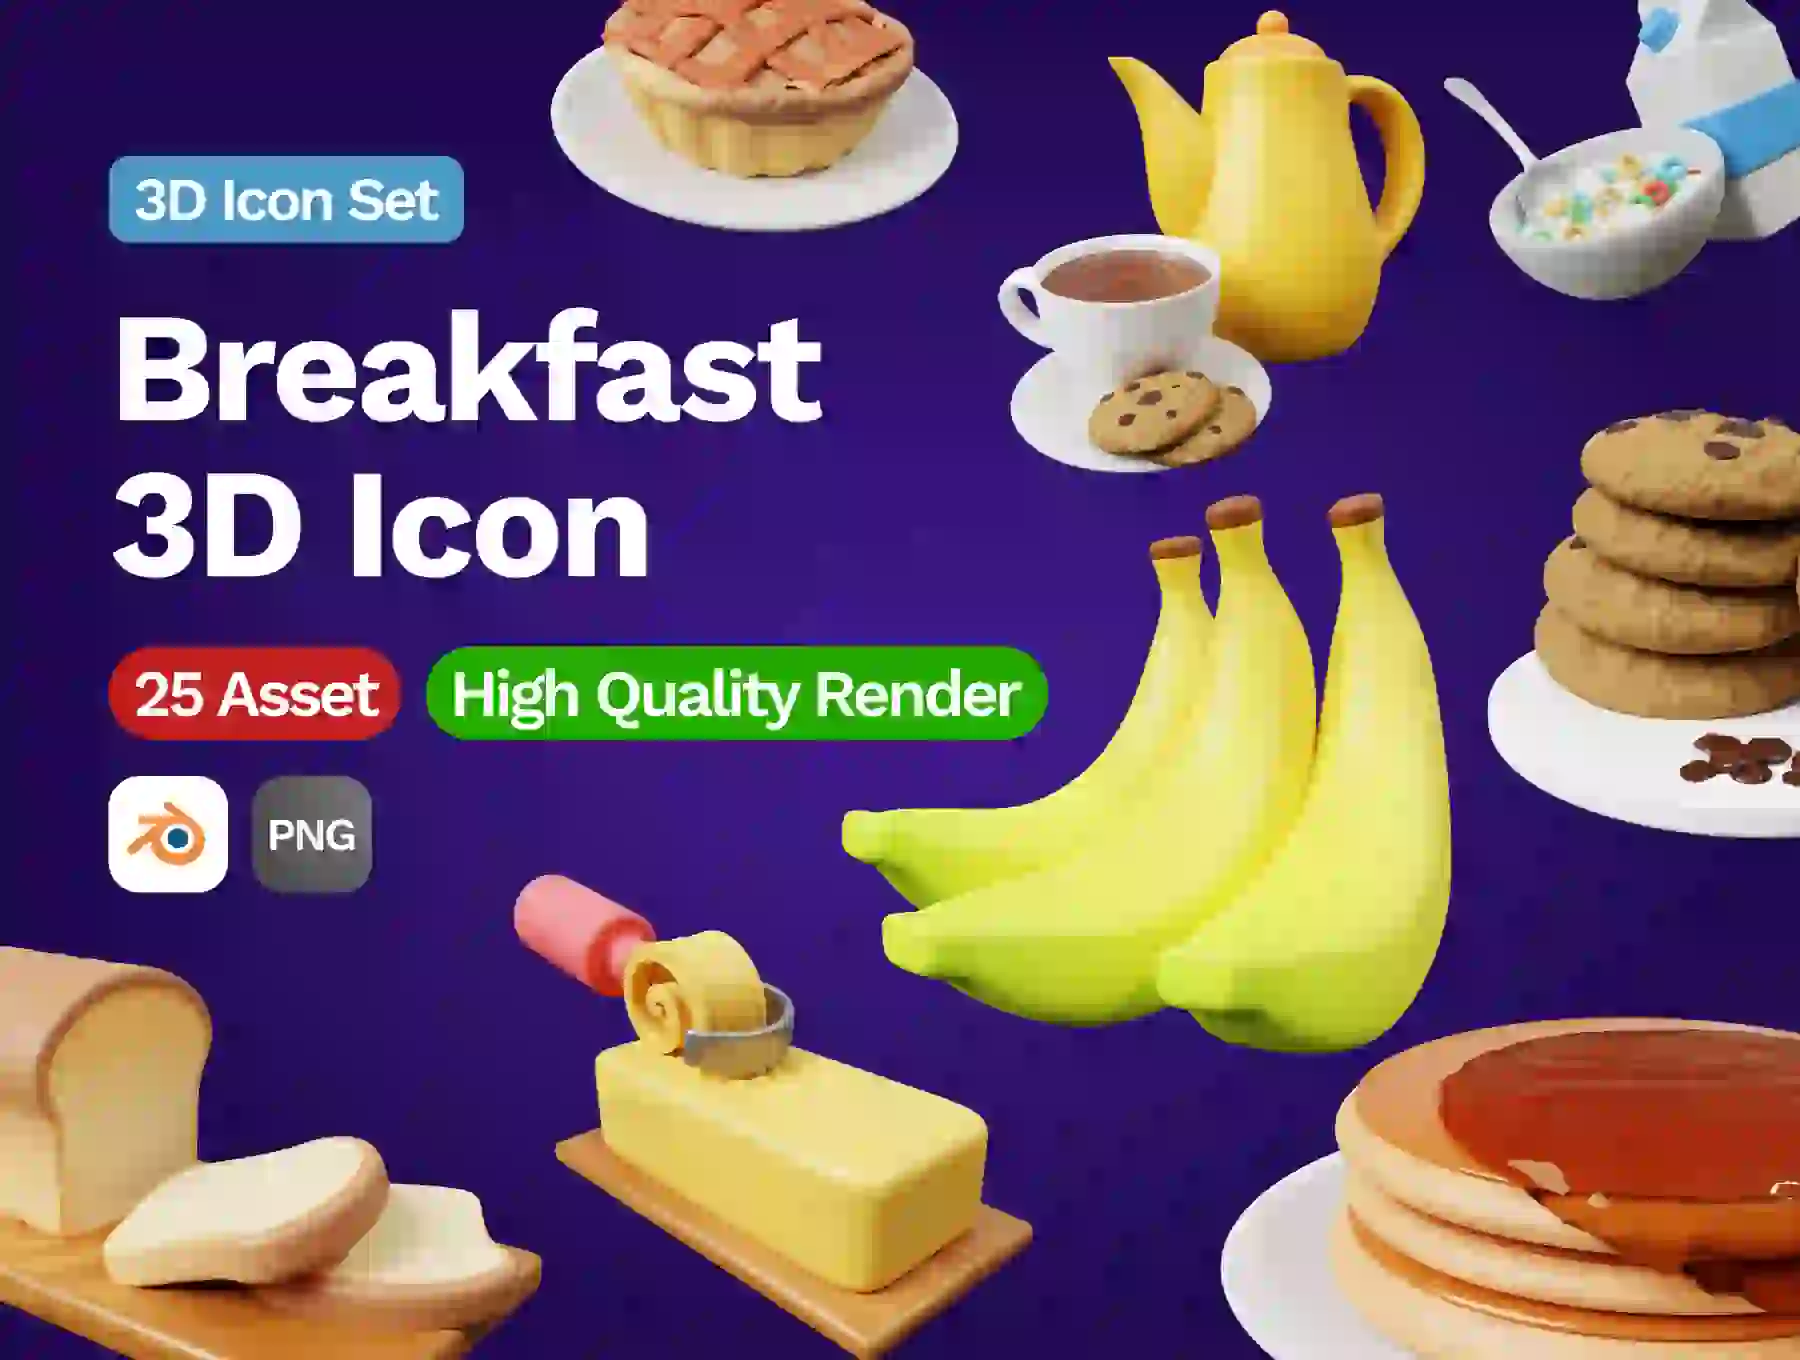 3D Breakfast Icon